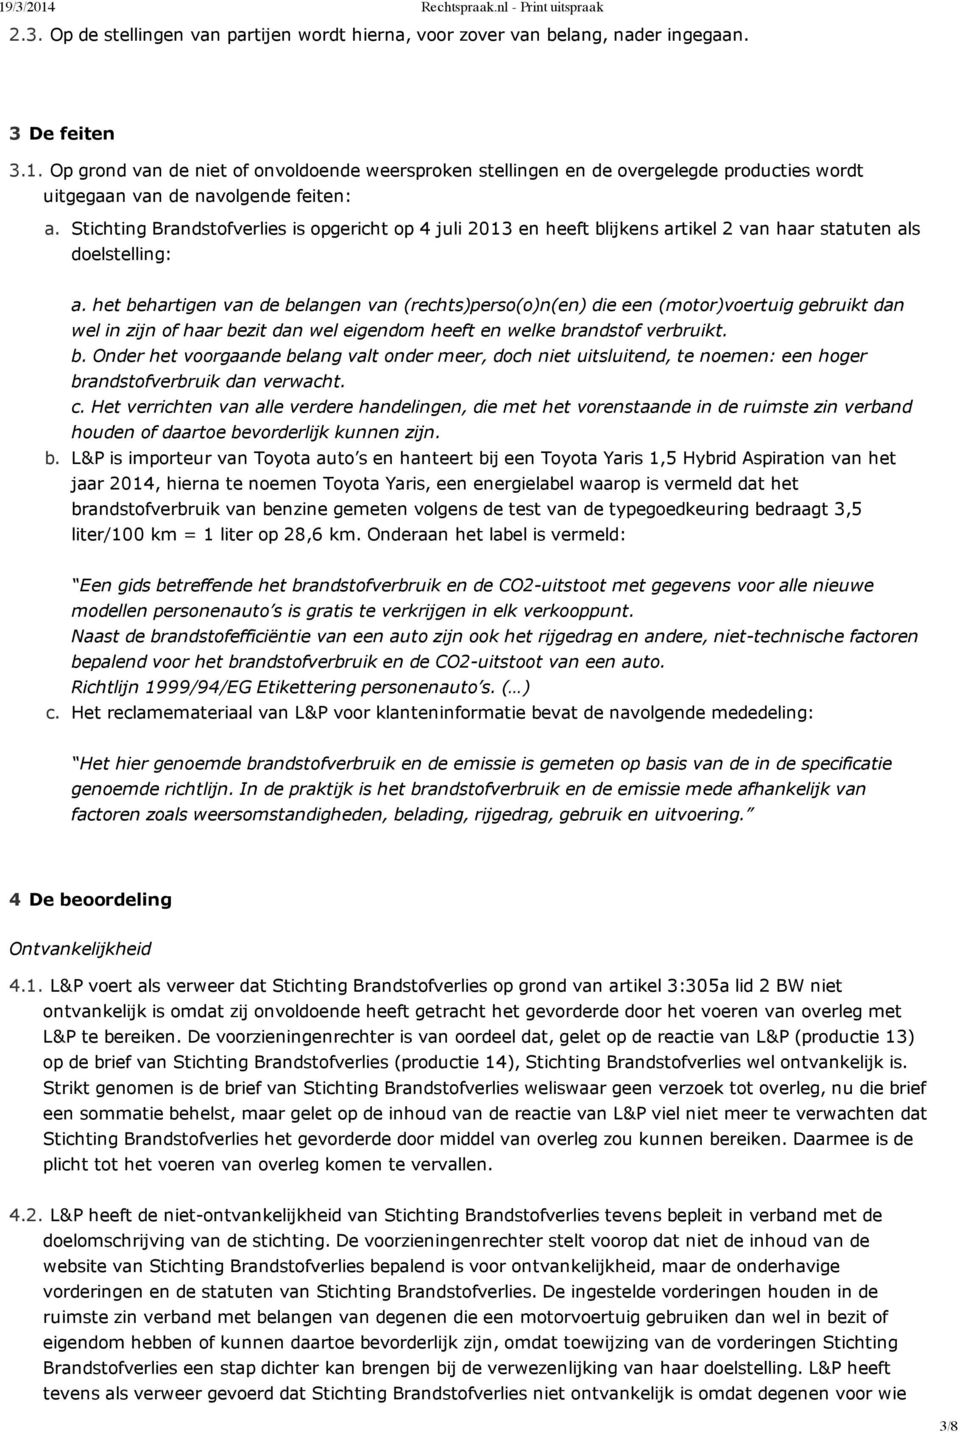 Stichting Brandstofverlies is opgericht op 4 juli 2013 en heeft blijkens artikel 2 van haar statuten als doelstelling: a.